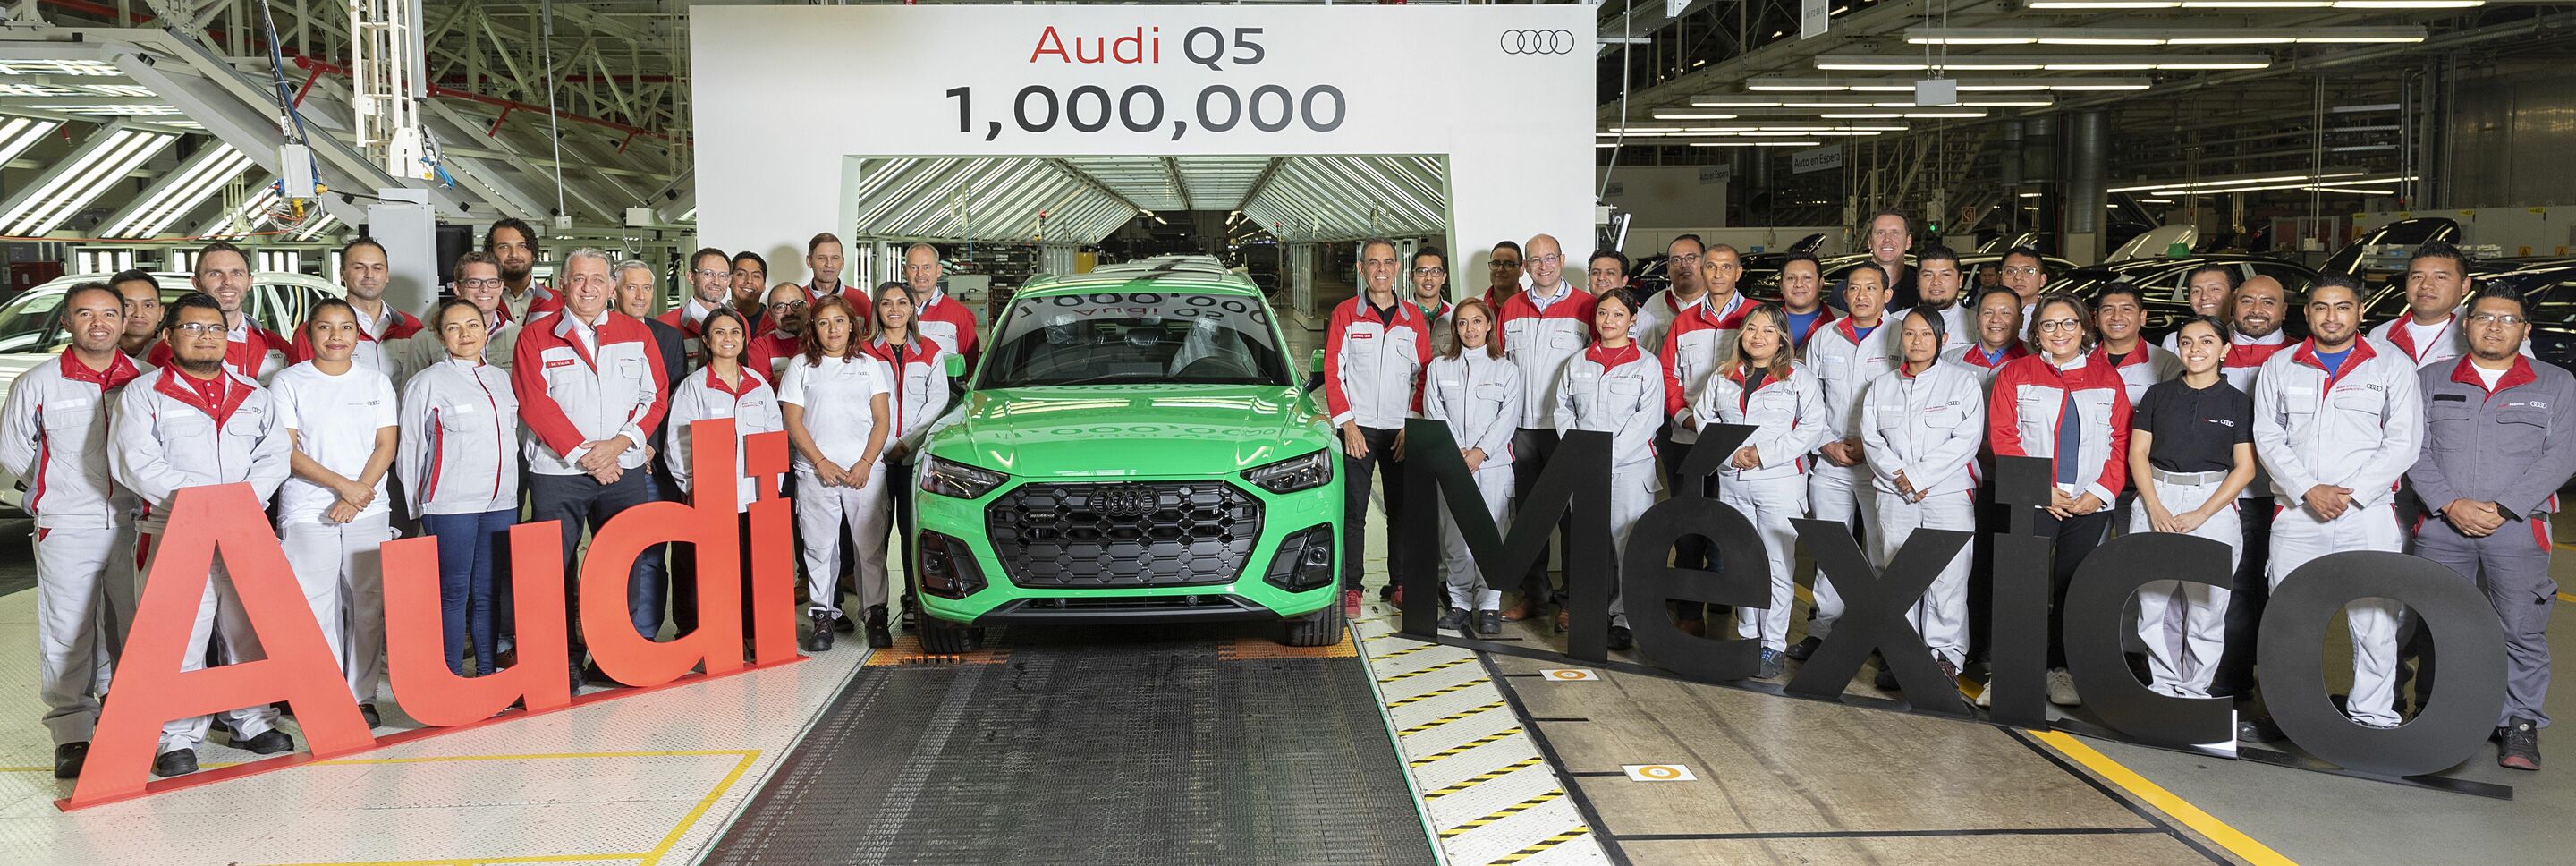 Zehn Jahre nach Grundsteinlegung fährt bei Audi México in San José Chiapa das einmillionste Auto vom Band